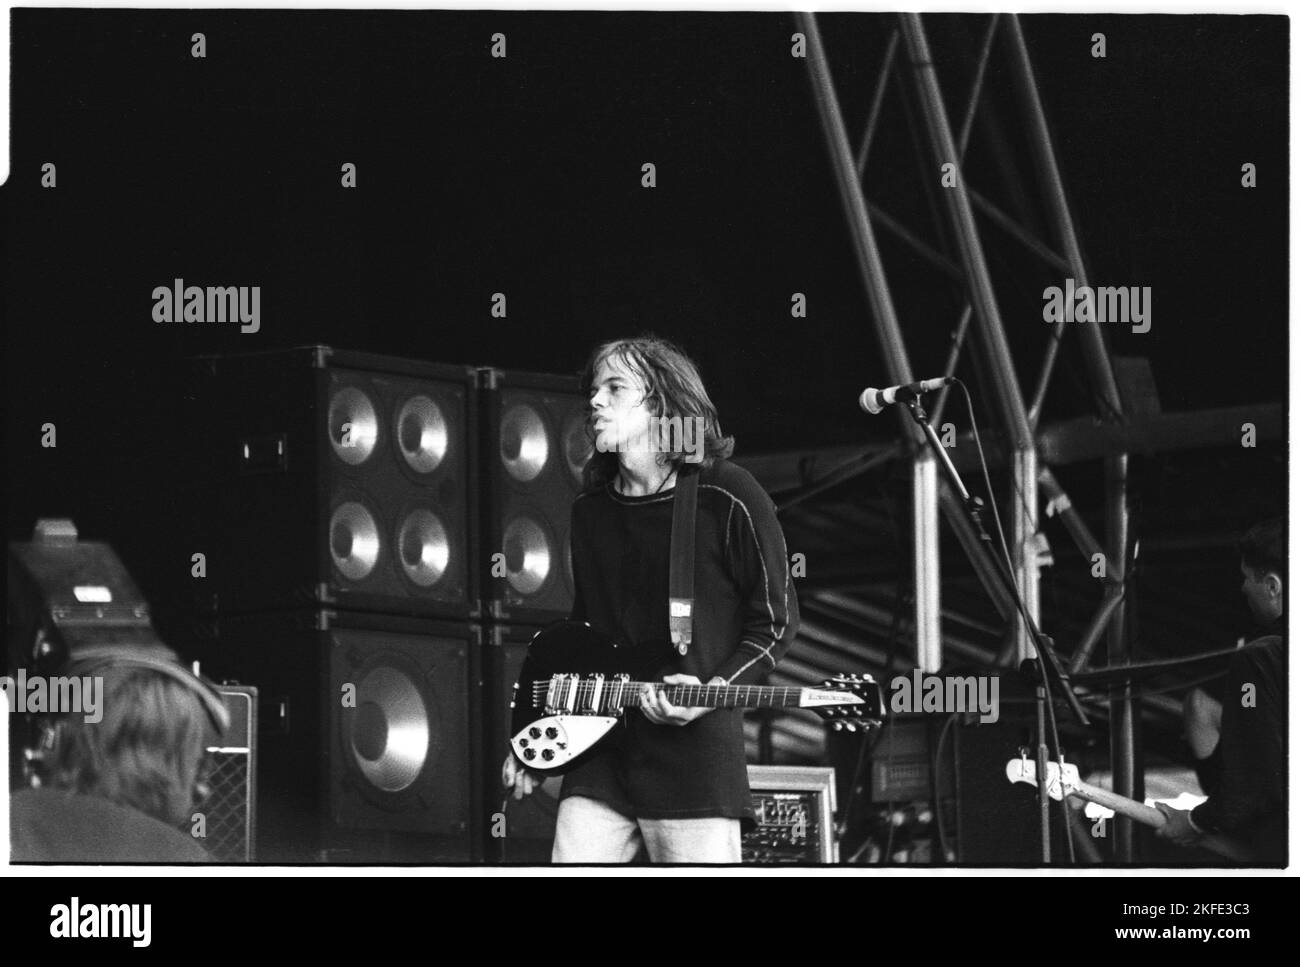 Mark Gardener del gruppo britannico Indie Ride giocando al Main Stage a Glastonbury, sabato 25 giugno 1994. Non c'era alcuna fase piramidale quell'anno dopo un incendio. Fotografia © Rob Watkins Foto Stock